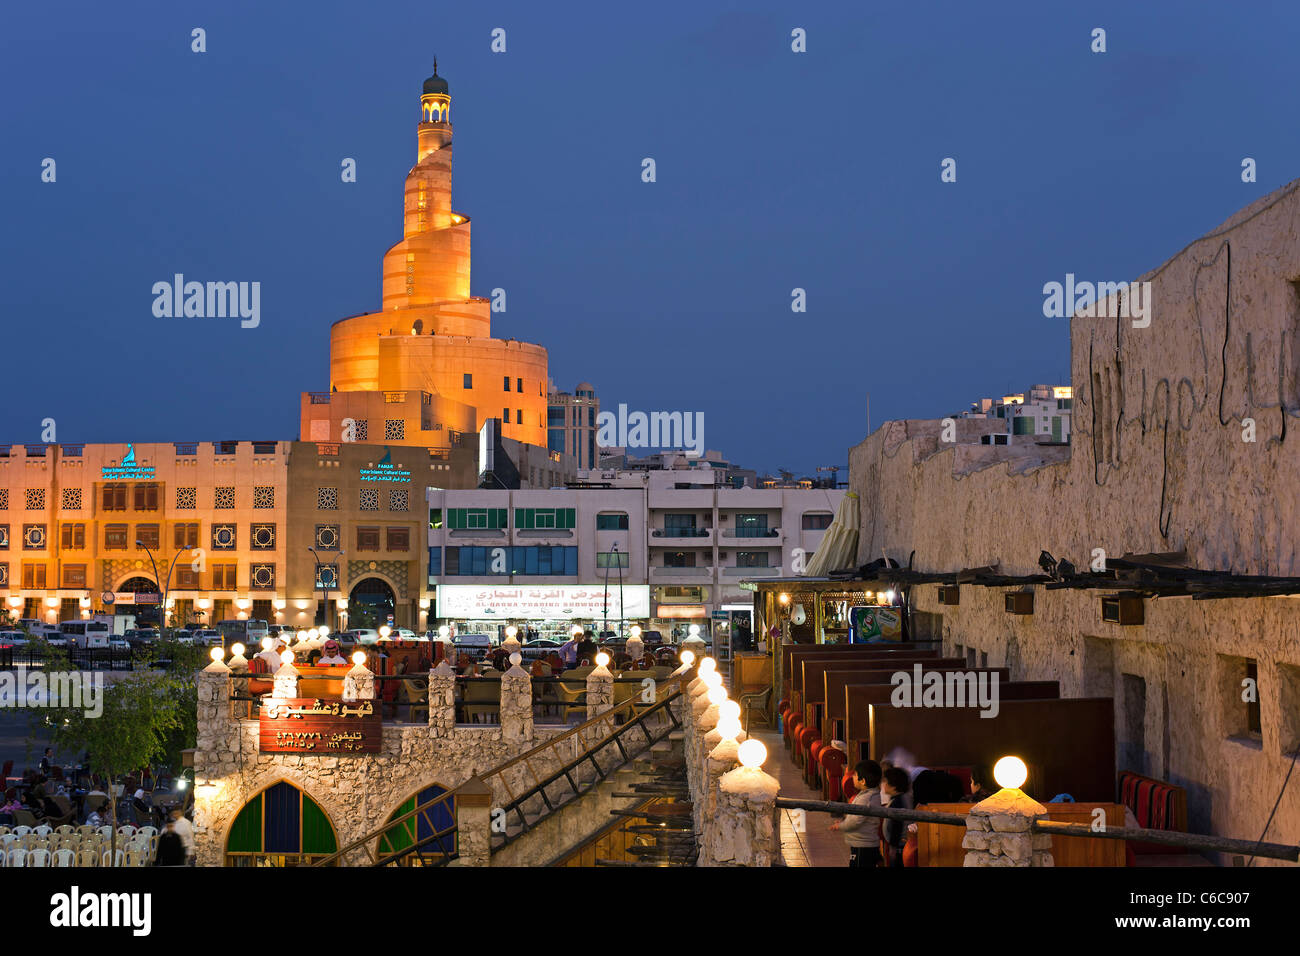 Katar, Naher Osten, Arabische Halbinsel, Doha, dem restaurierten Souq Waqif mit Schlamm gerendert Geschäfte und Holzbalken ausgesetzt Stockfoto